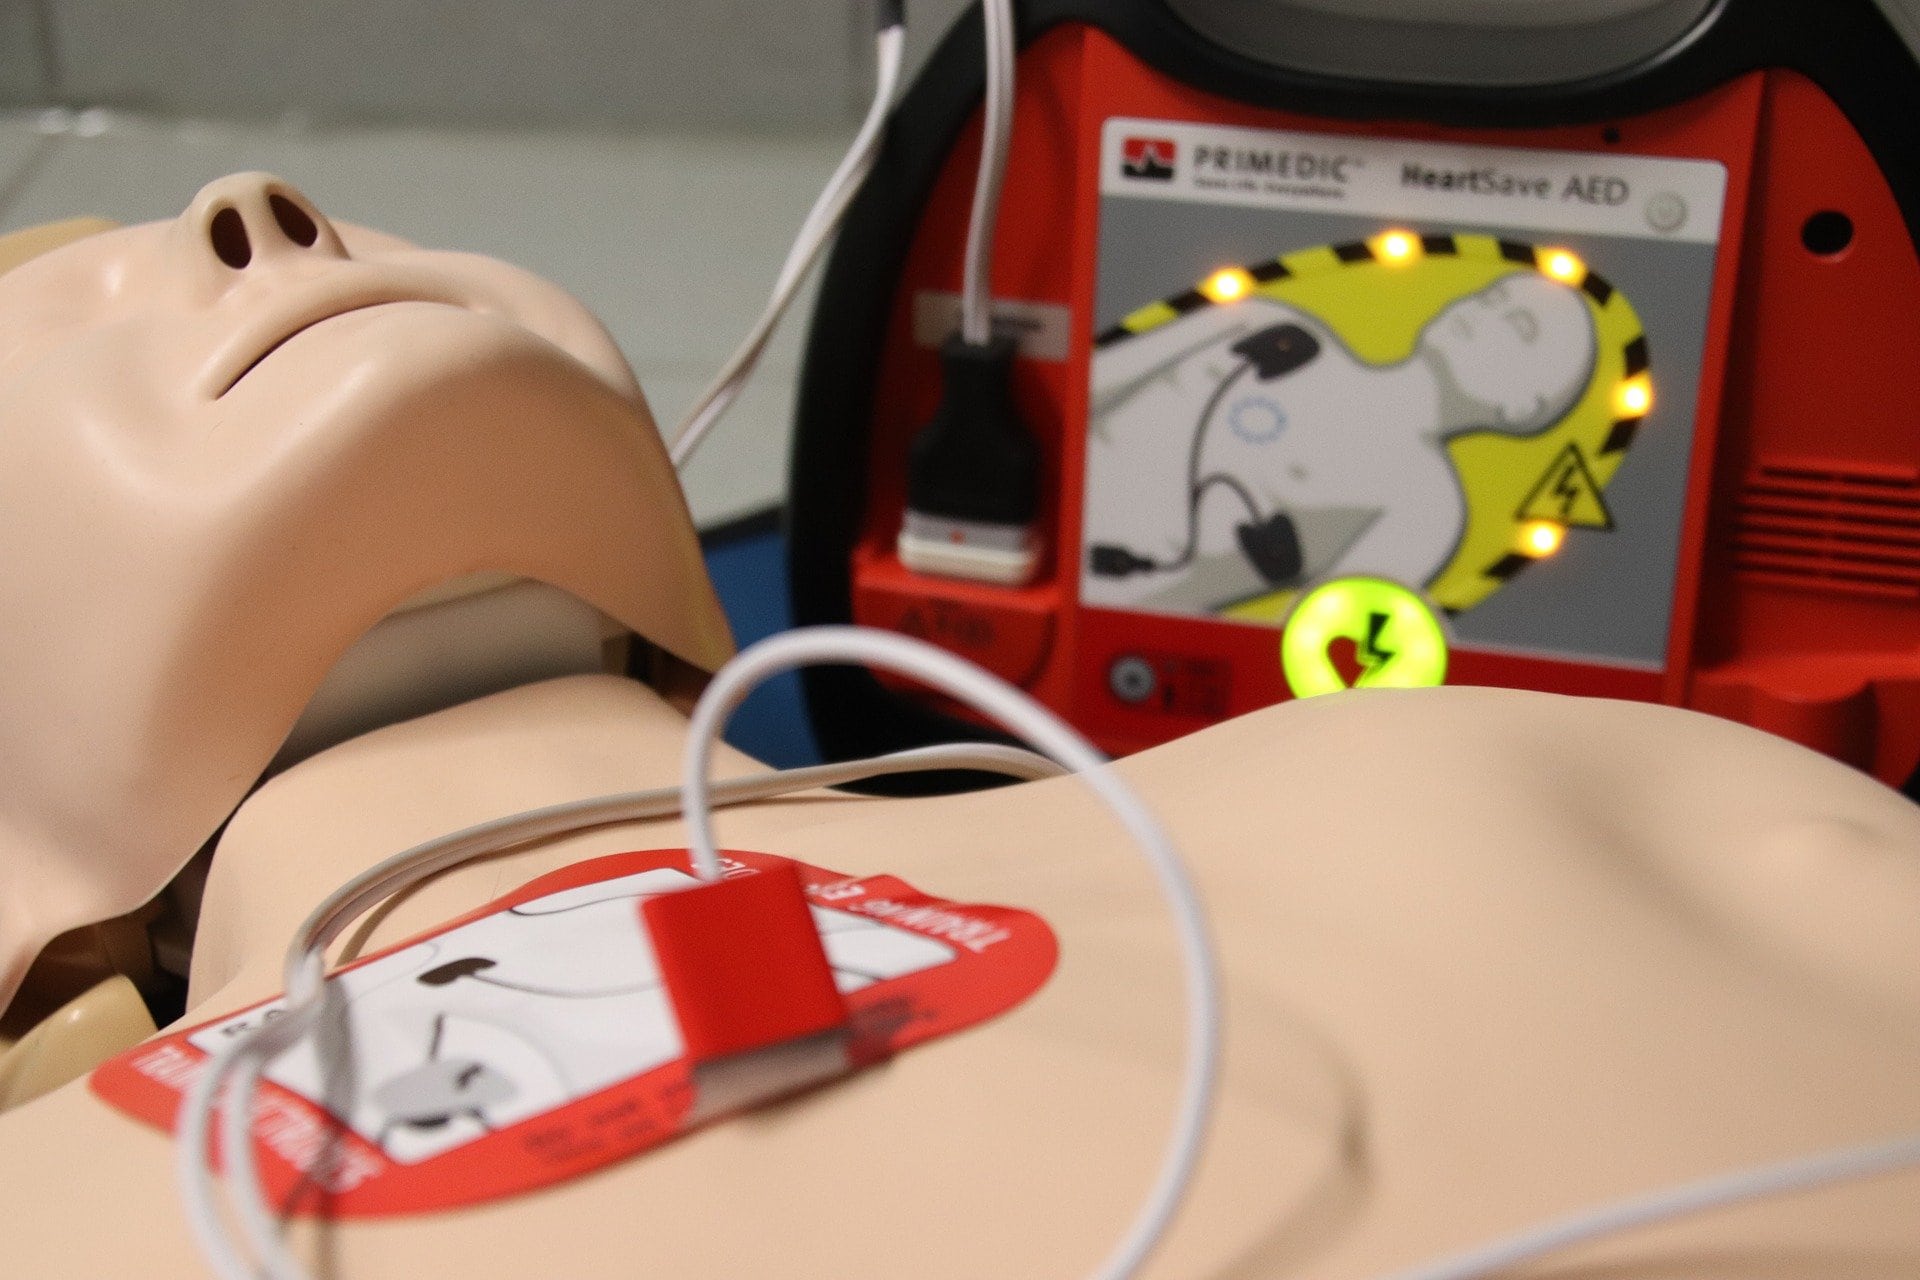 Resuscitation dummy next to a defibrillator - one of the defibrillator pads is on the dummy's chest.